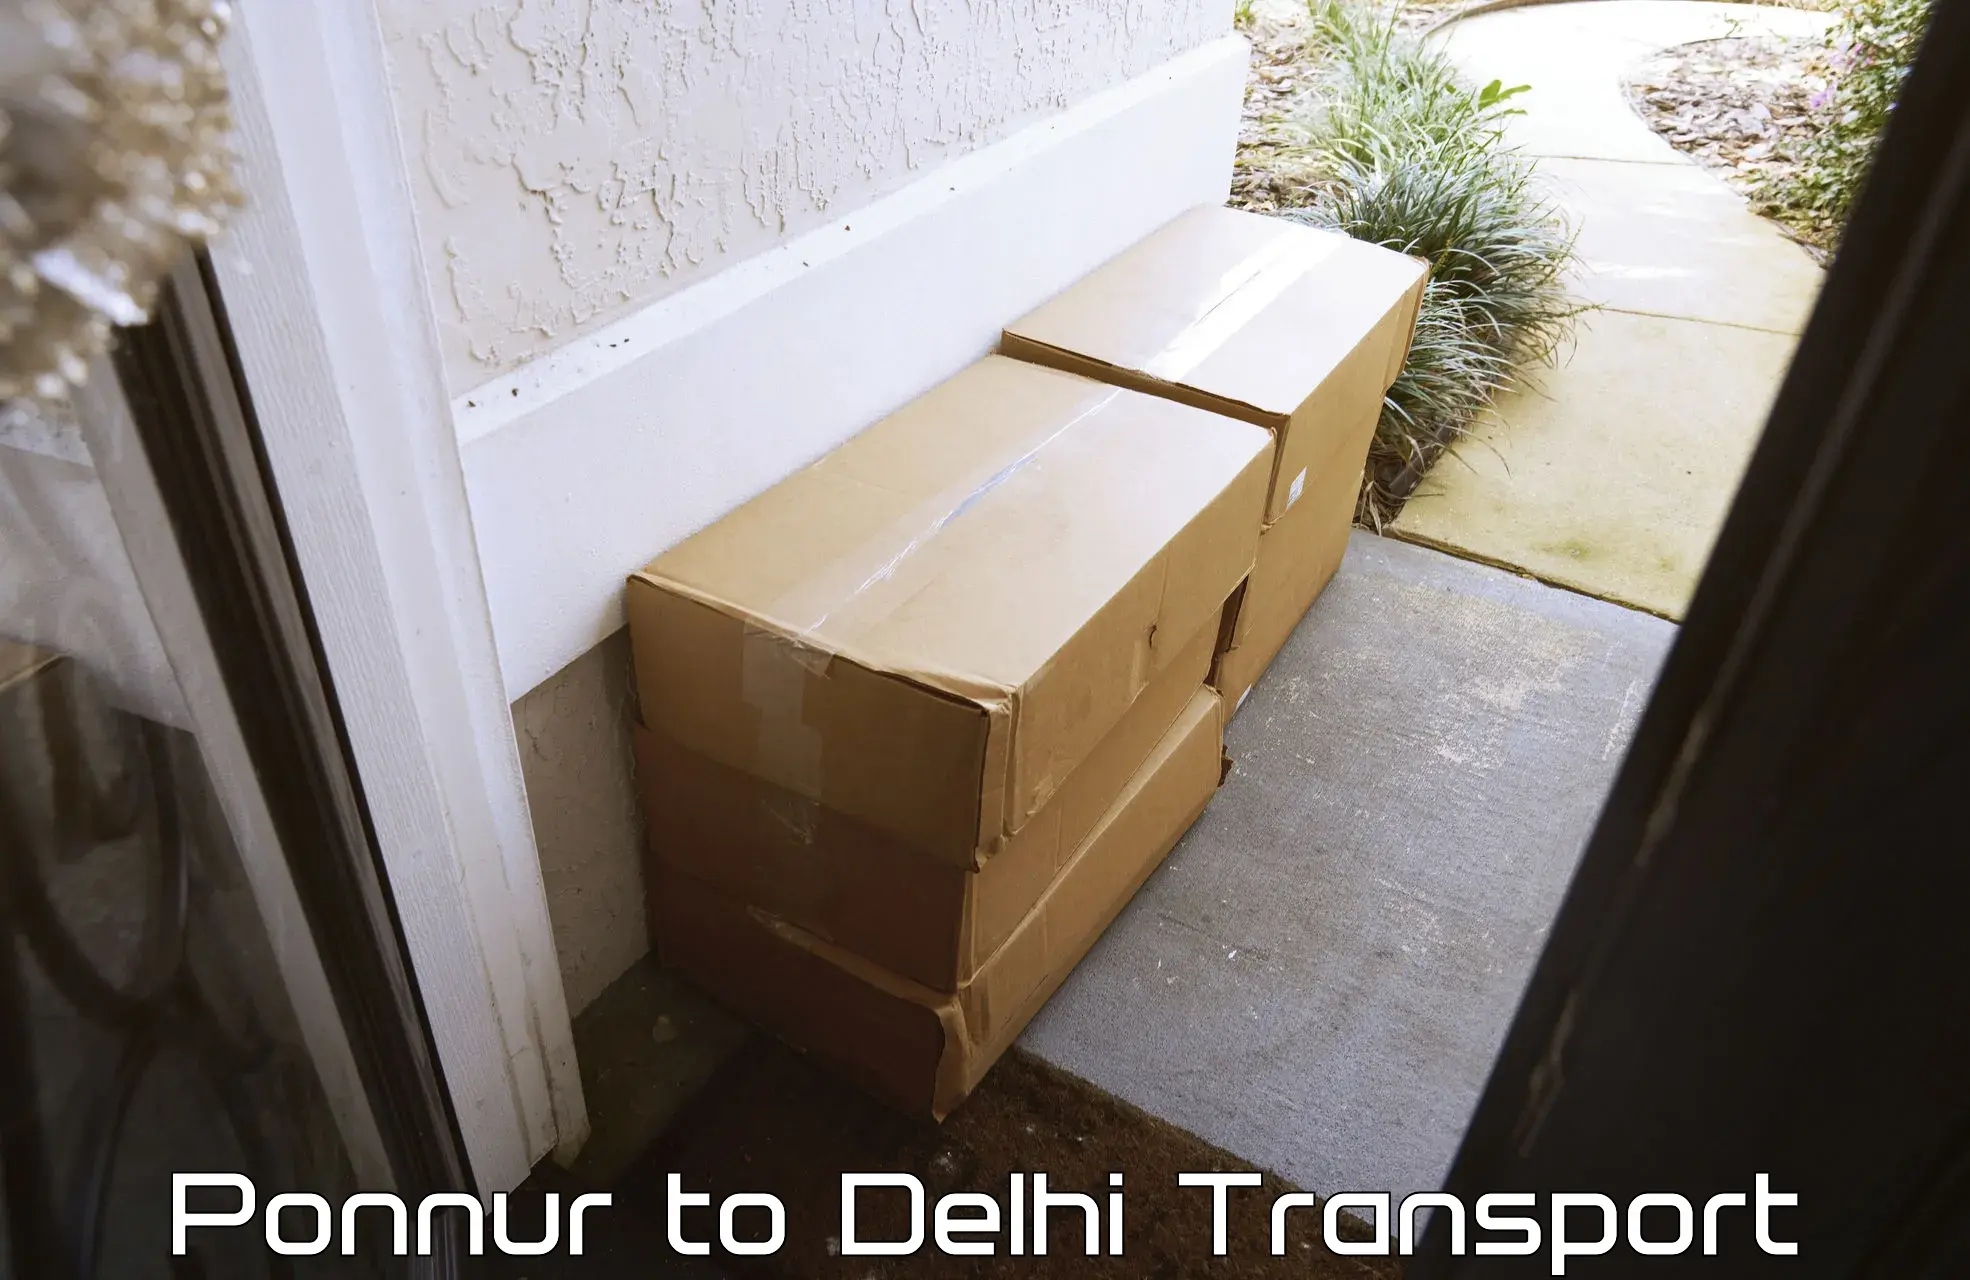 Online transport Ponnur to Jawaharlal Nehru University New Delhi